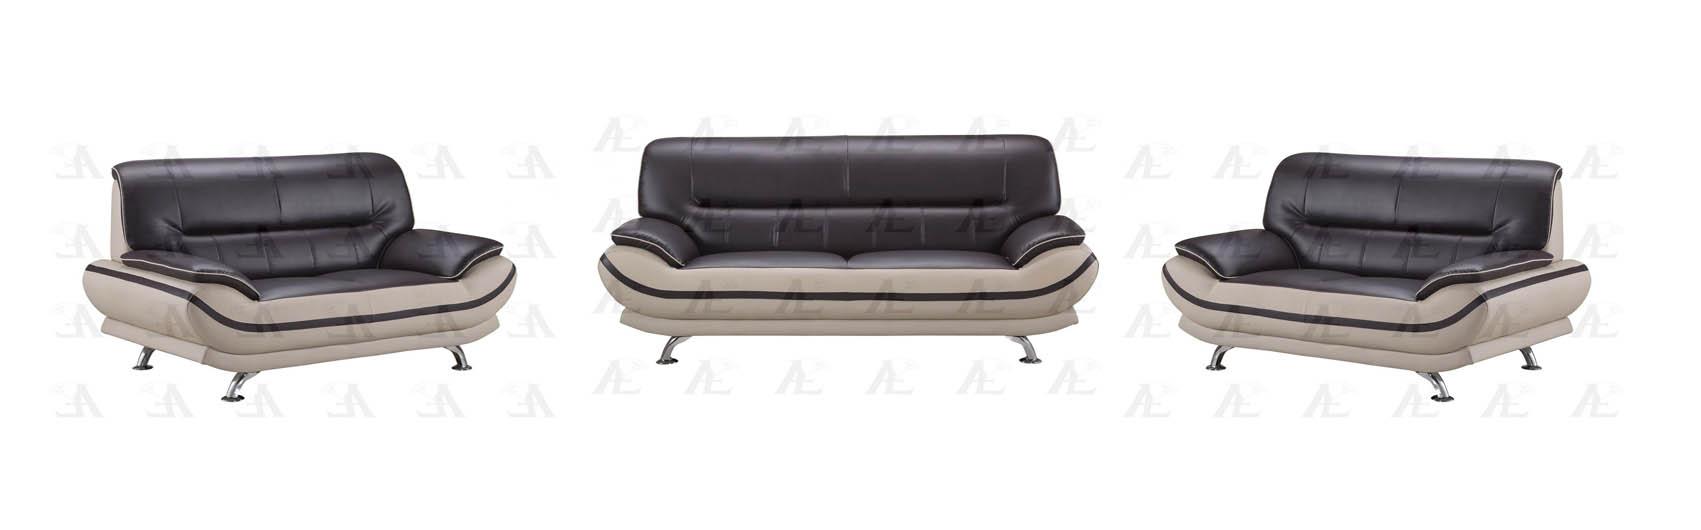 

    
Mahogany & Light Gray Sofa and 2 Loveseats Set 3Pcs American Eagle AE709-MA.LG
